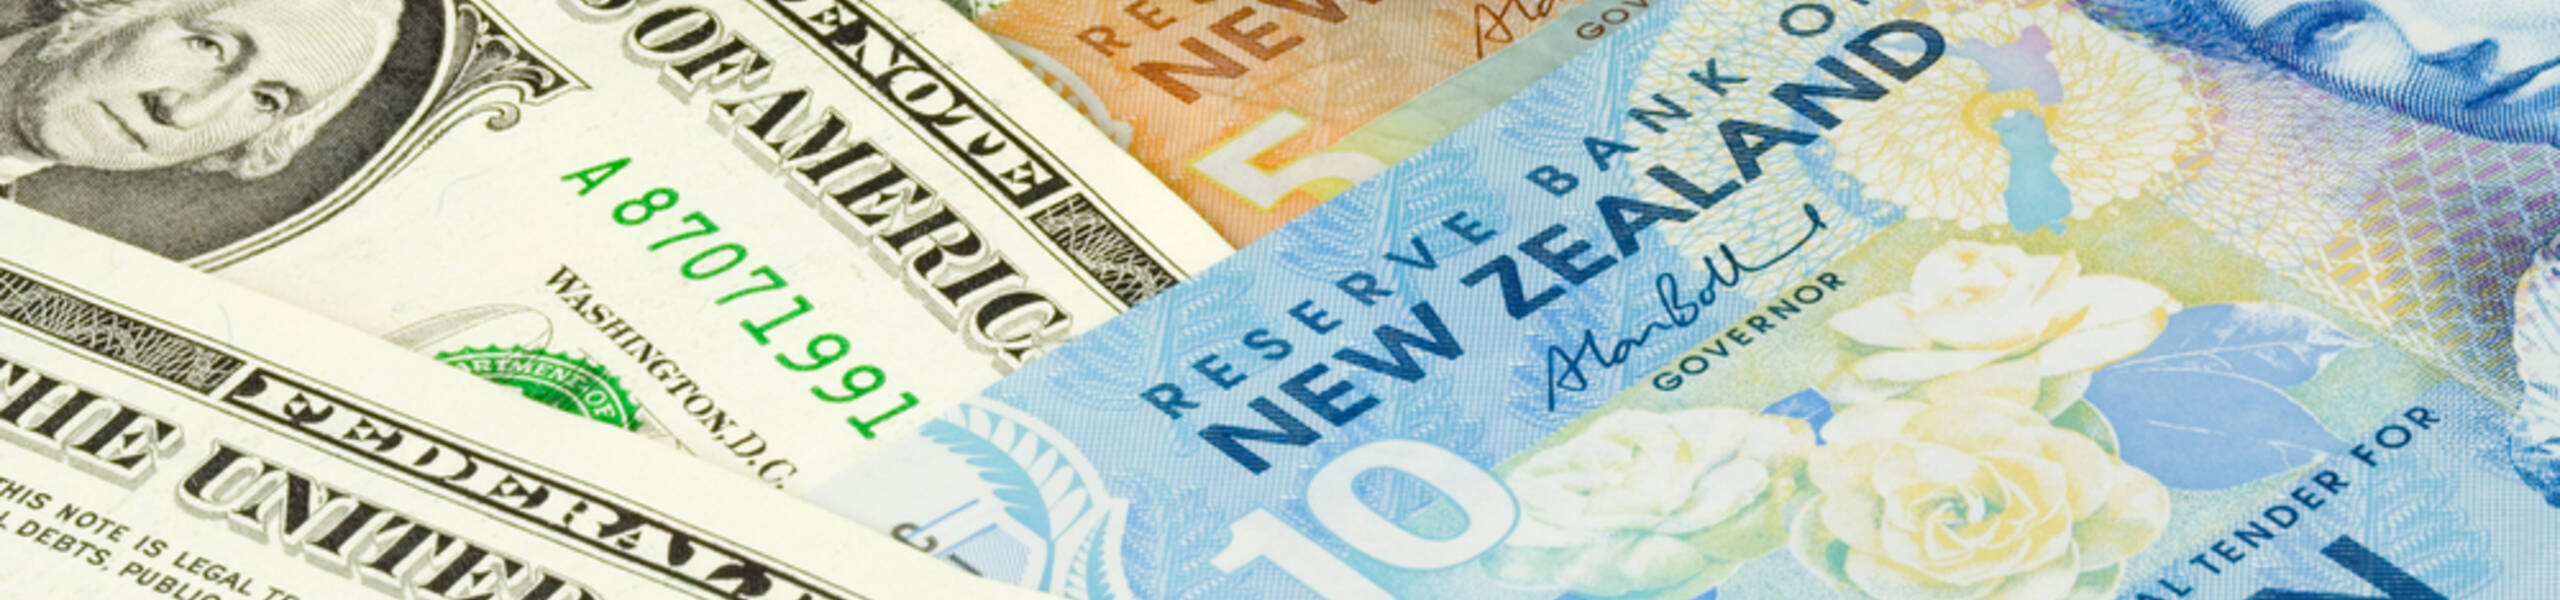 Kế hoạch giao dịch cặp ngoại tệ NZDUSD ngày 15/03/2019